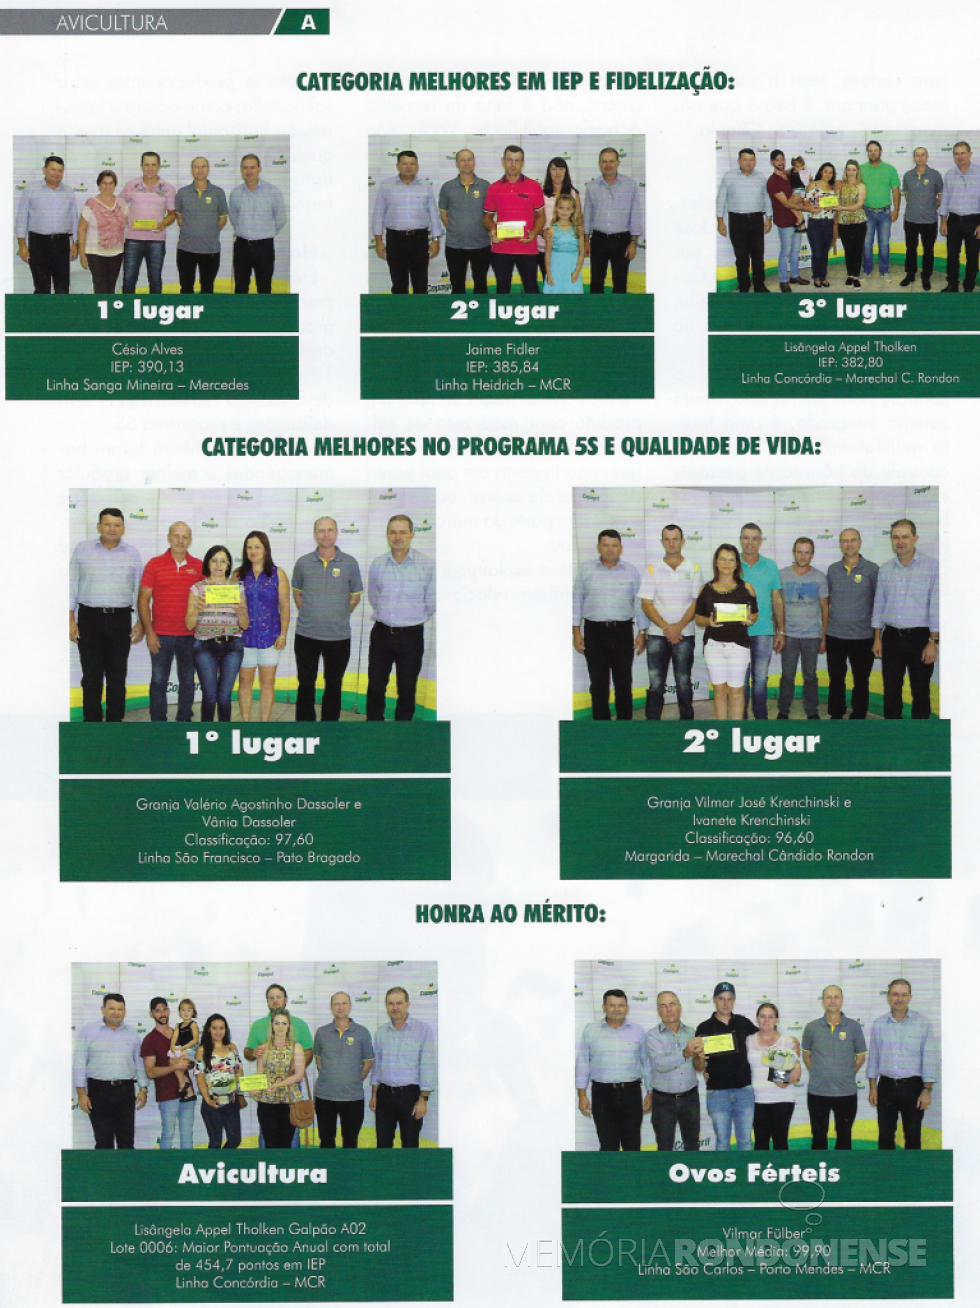 Premiação dos associados da Copagril com destaque na avicultura. 
Imagem: Revista Copagril nº 100 - FOTO 7 - 